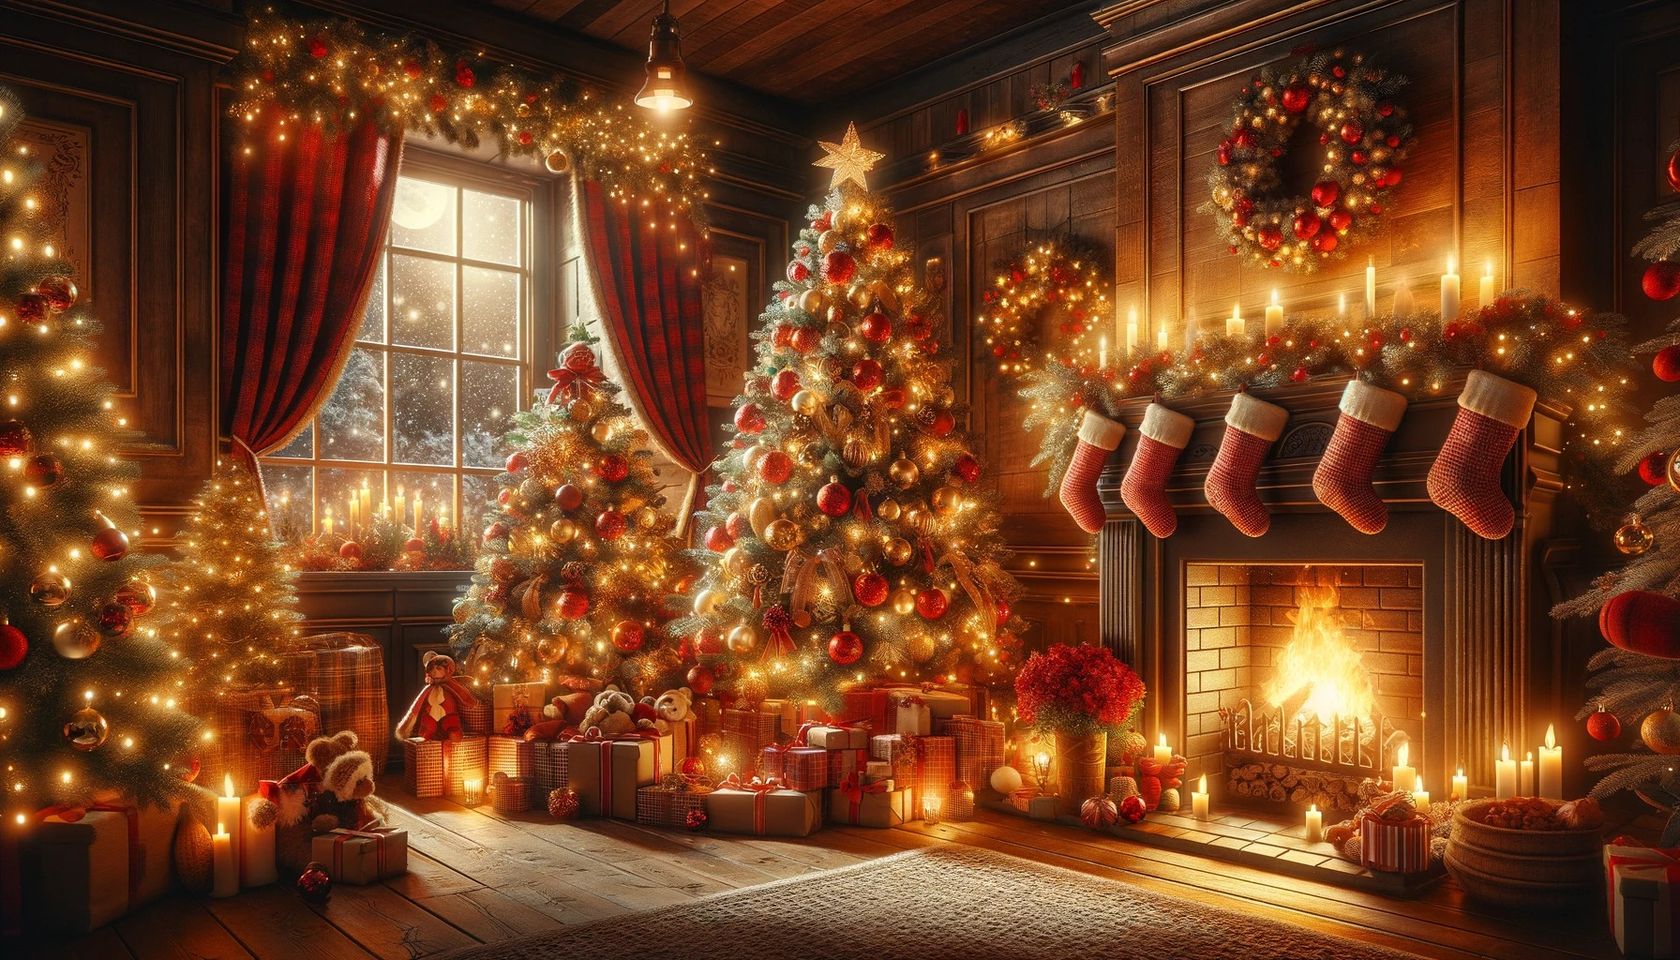 Z okazji nadchodzących Świąt Bożego Narodzenia, życzymy Wam ciepła, radości i miłości.